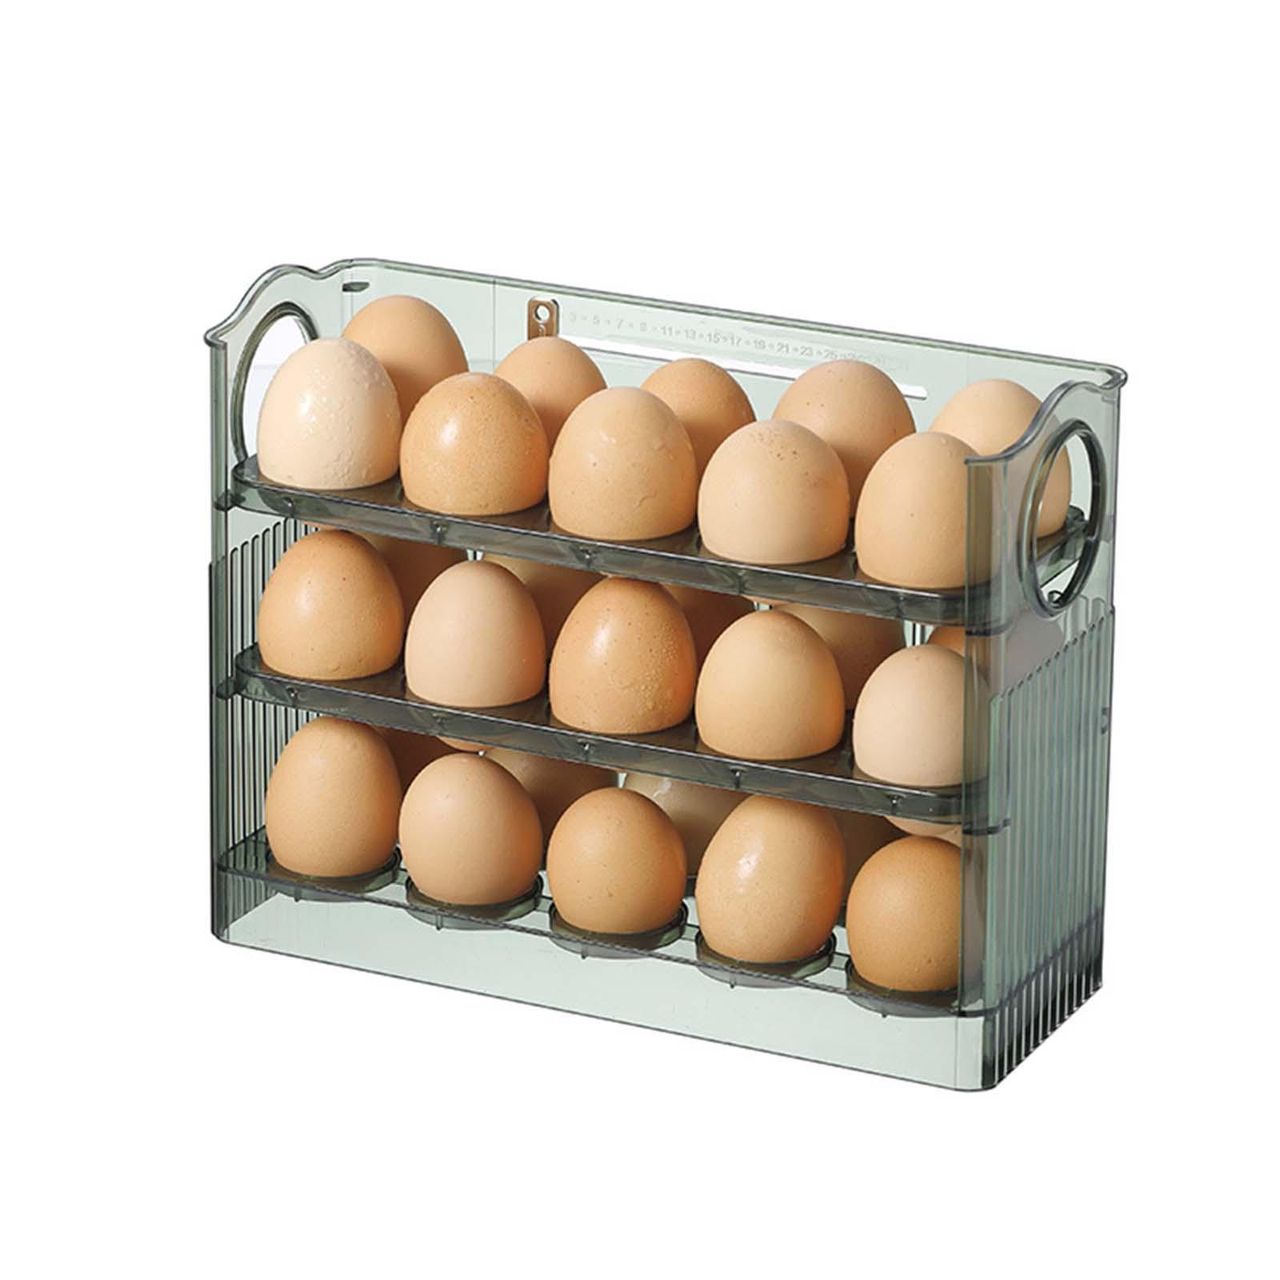 30 Eggs Space Saving Flip-type Egg Rack for Refrigerator